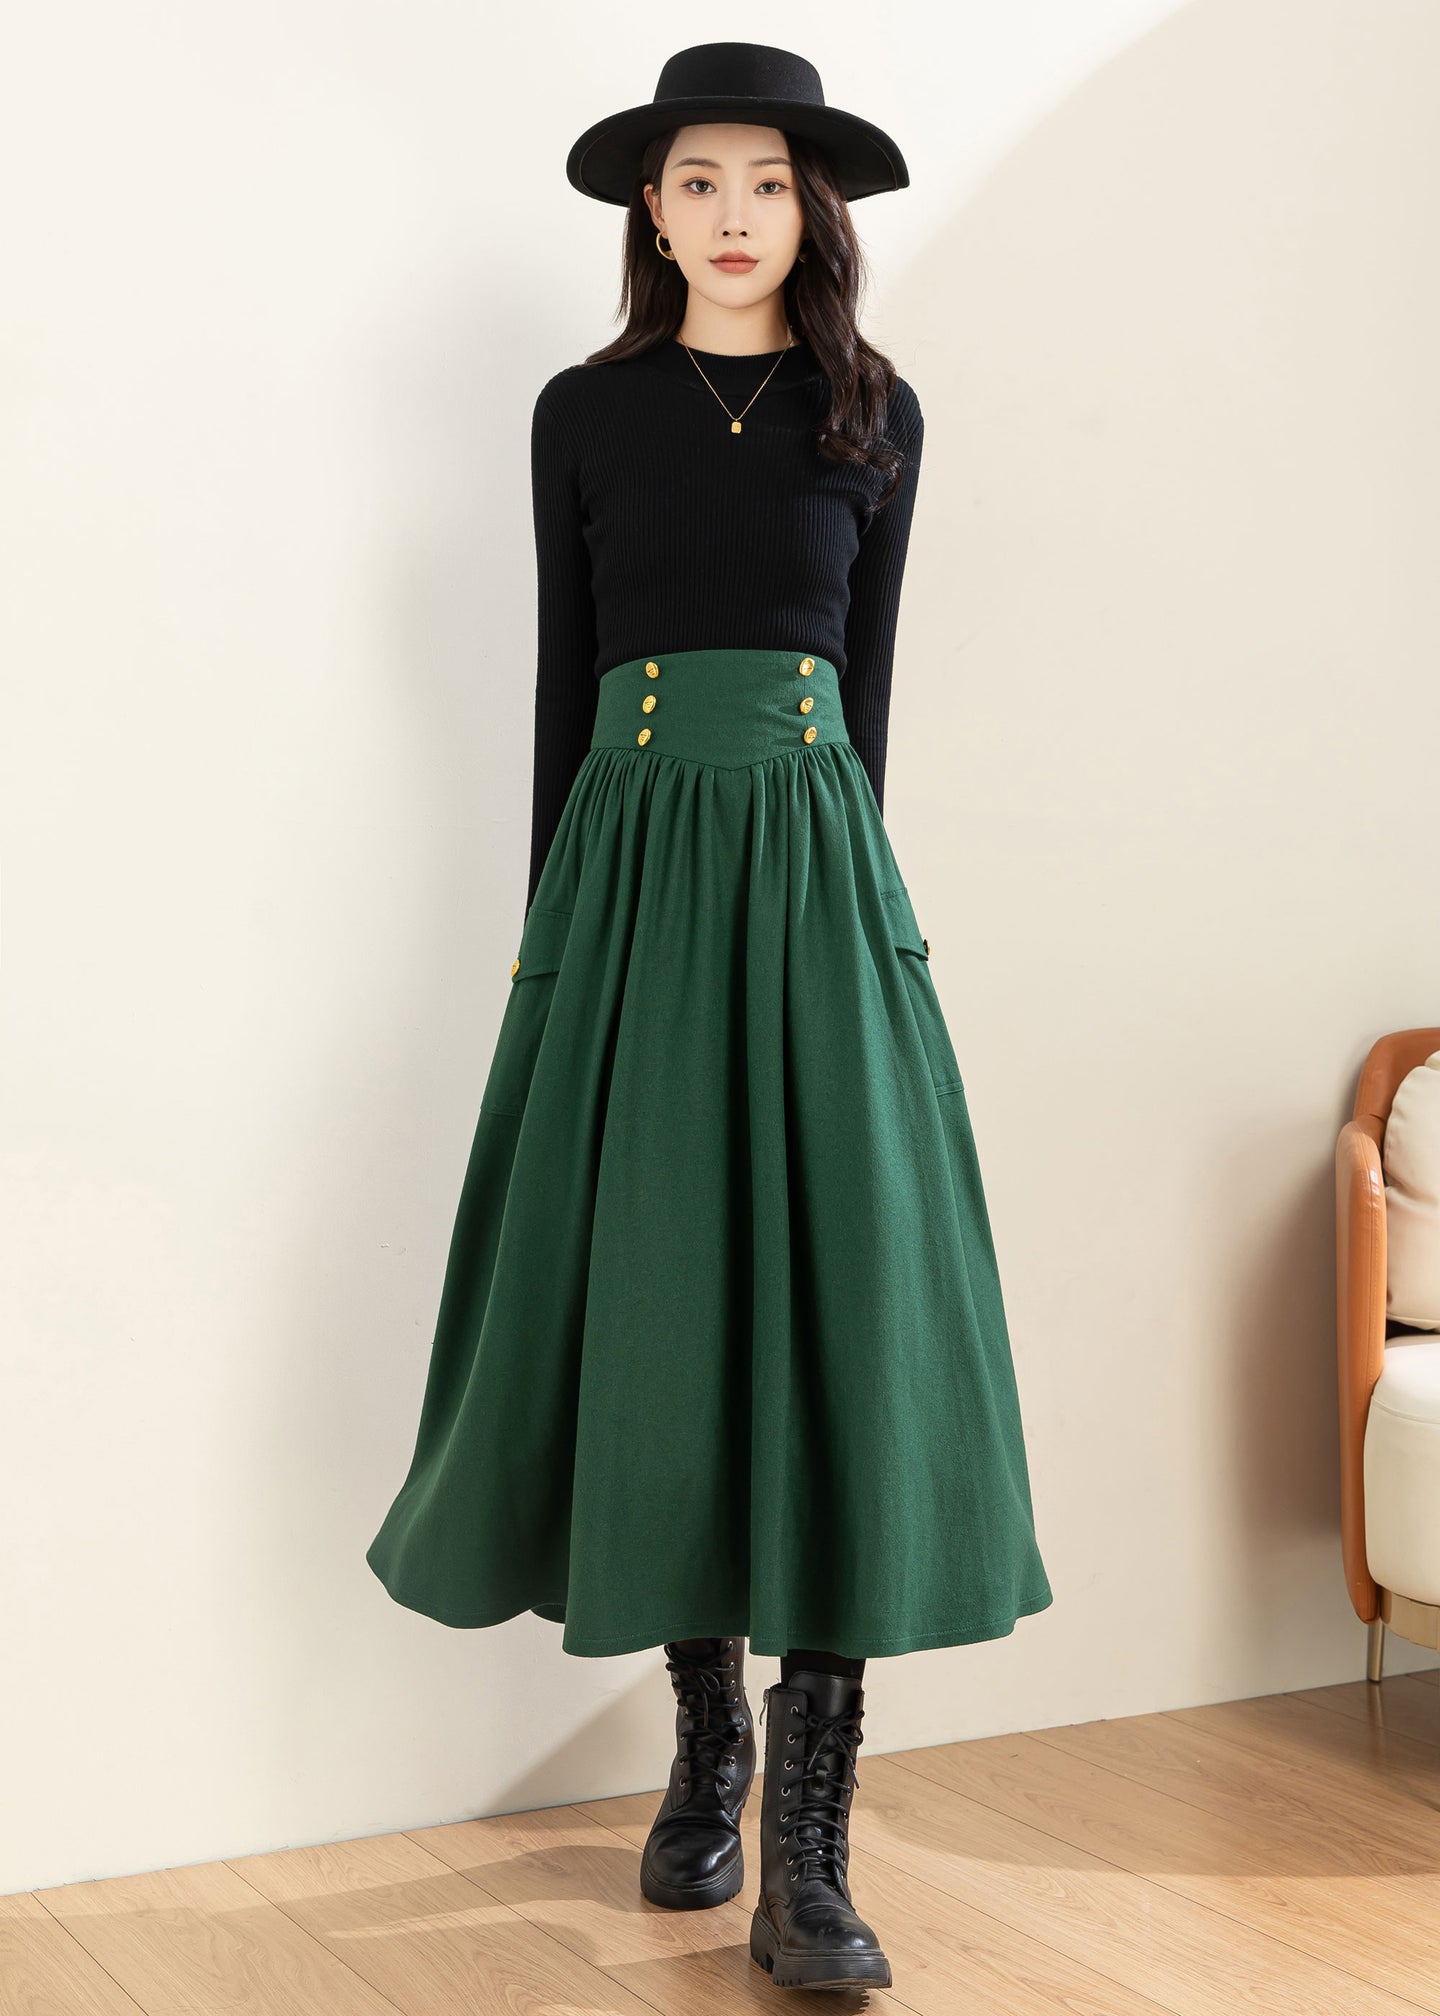 Green Wool Skirt, Wool Skirt Women C3600